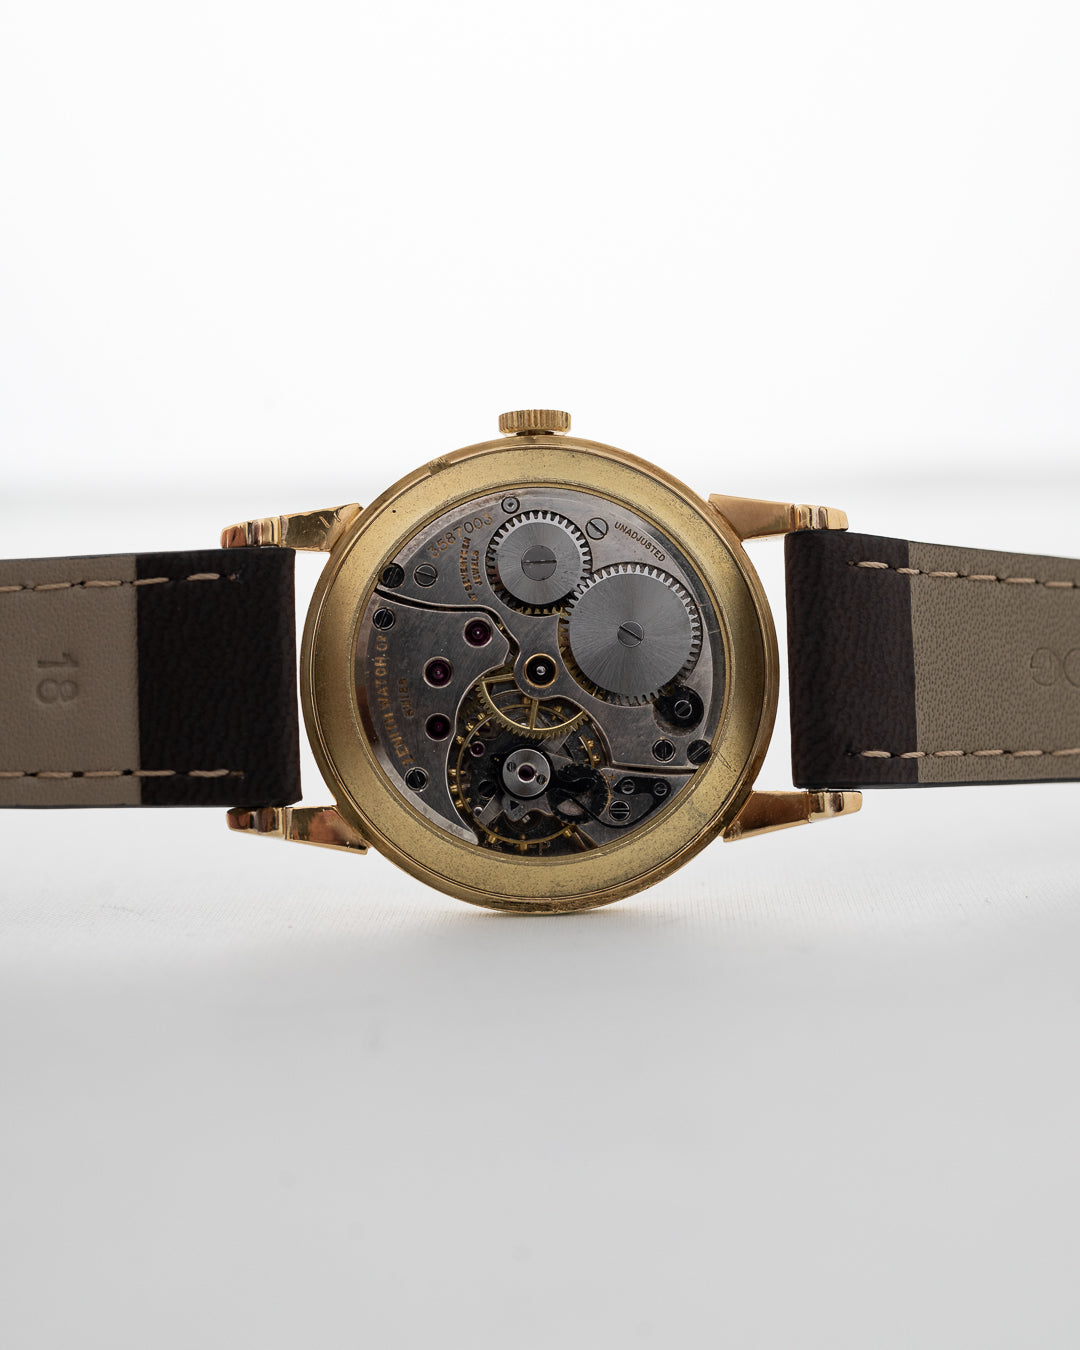 Zenith Chronometre 18k 1946